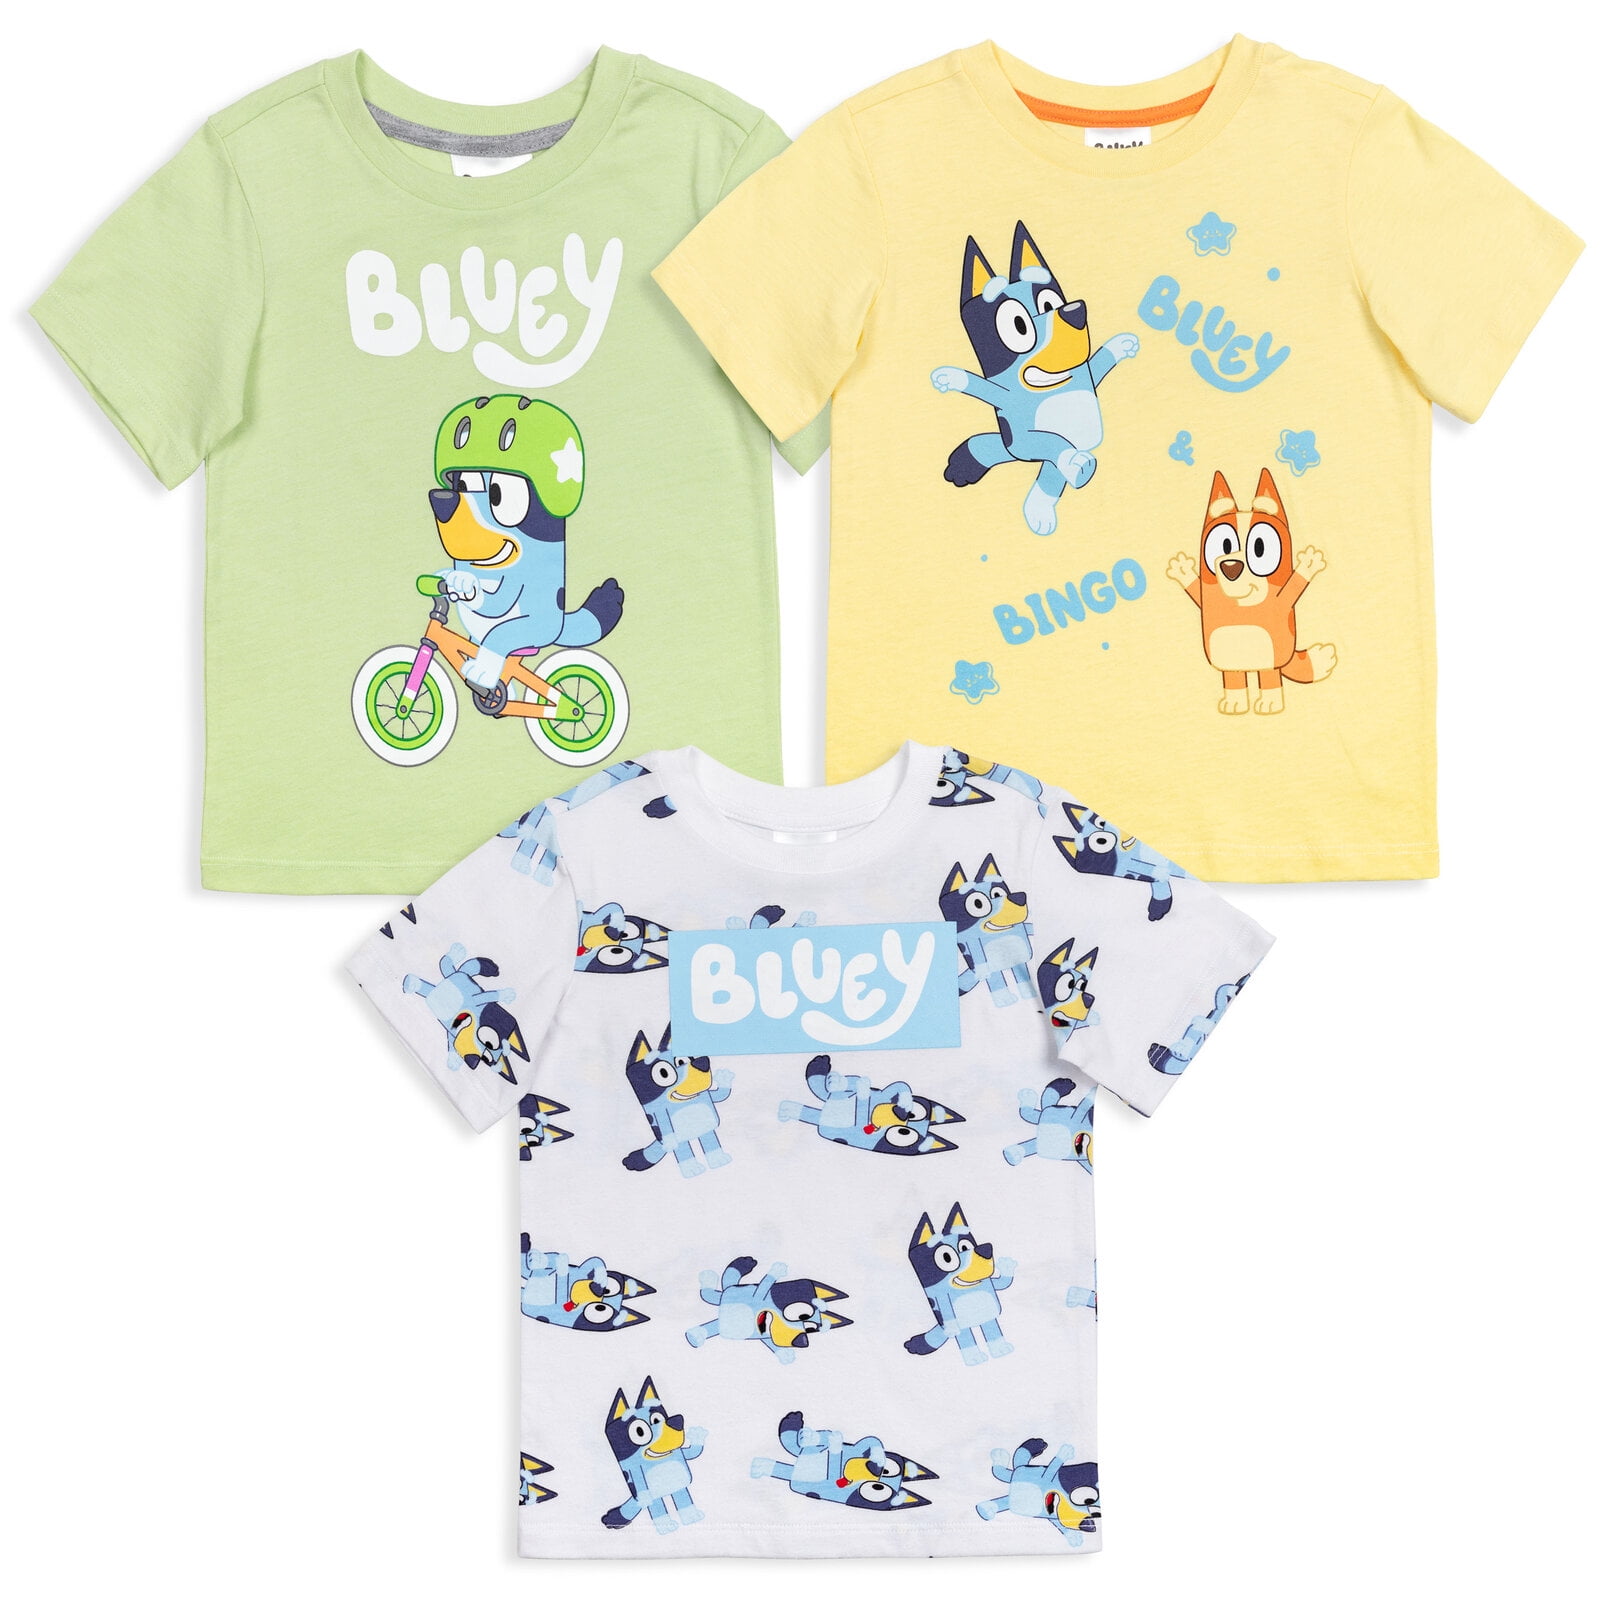 👕 Camisetas de algodón para niños: ¡Bluey Y Bingo Camiseta para Niños!  🐶💙🐾 14,99 €